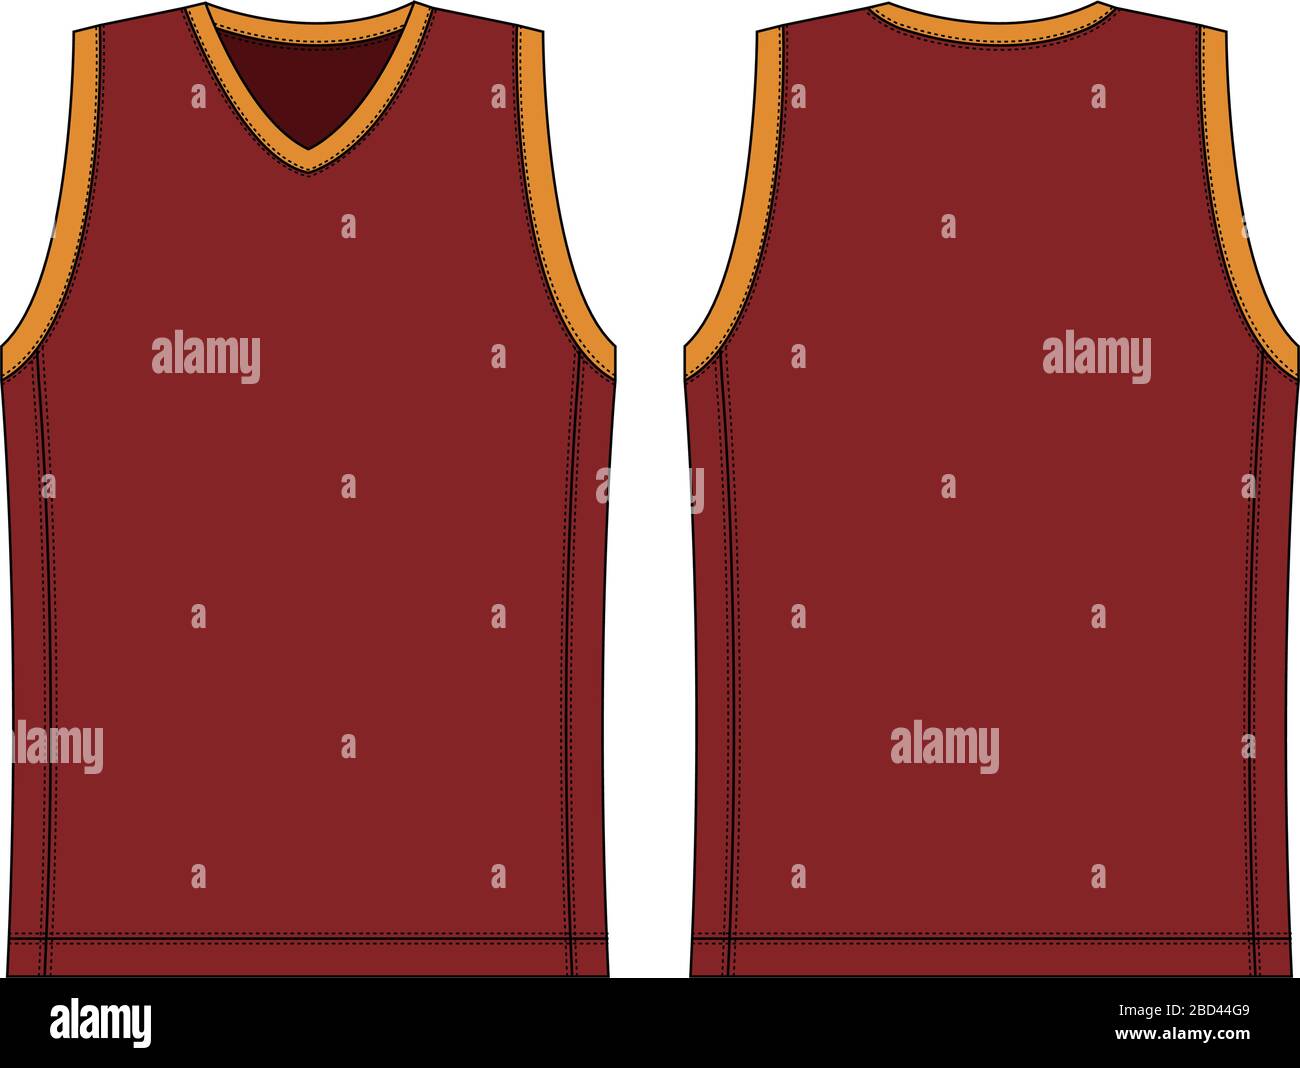 ilustración de la plantilla de la camiseta de tirantes/uniforme de baloncesto Ilustración del Vector